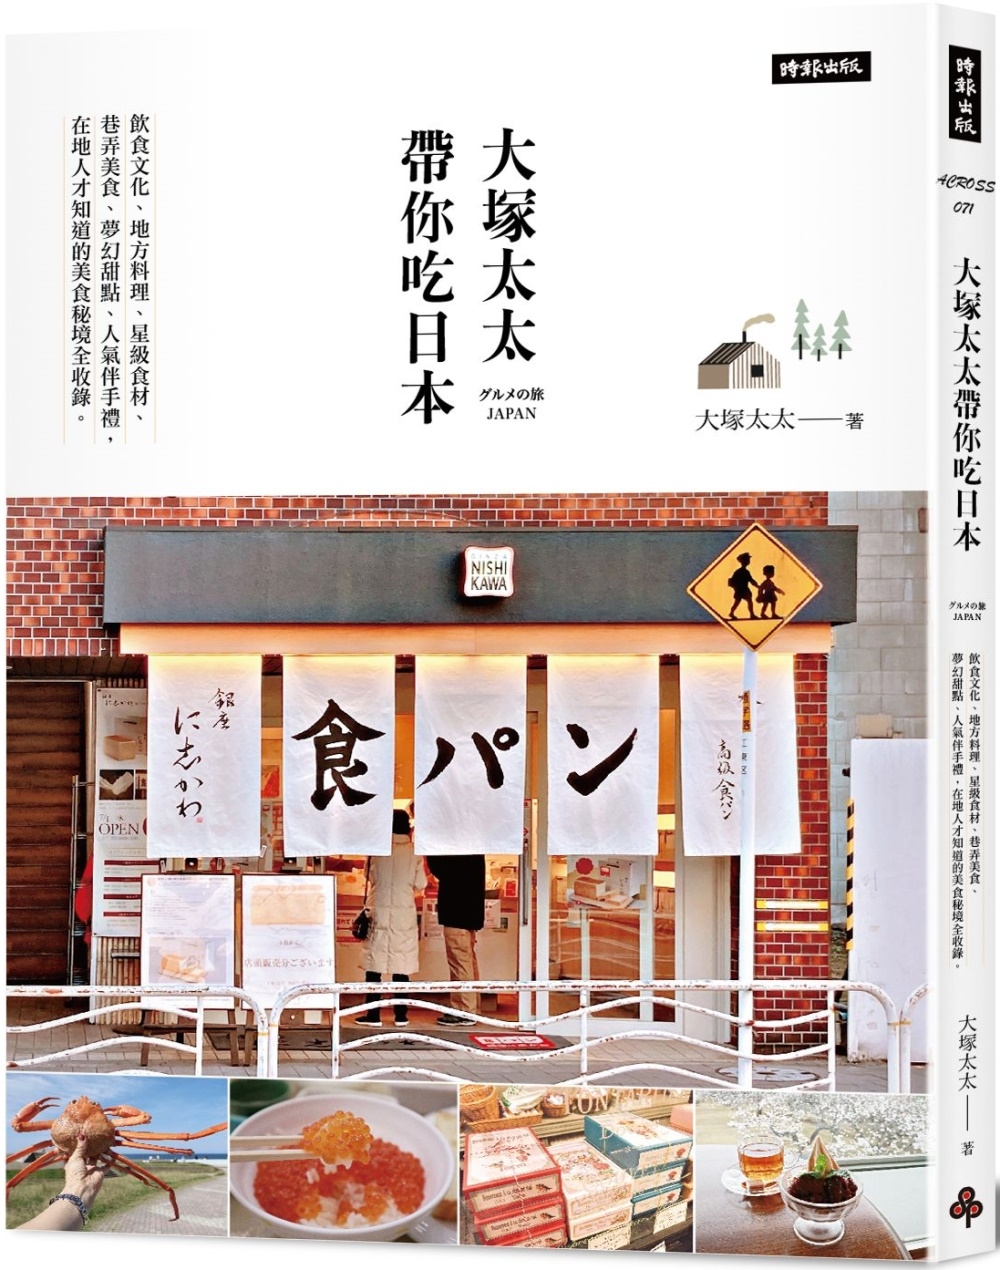 大塚太太帶你吃日本：飲食文化、地方料理、星級食材 、巷弄美食...